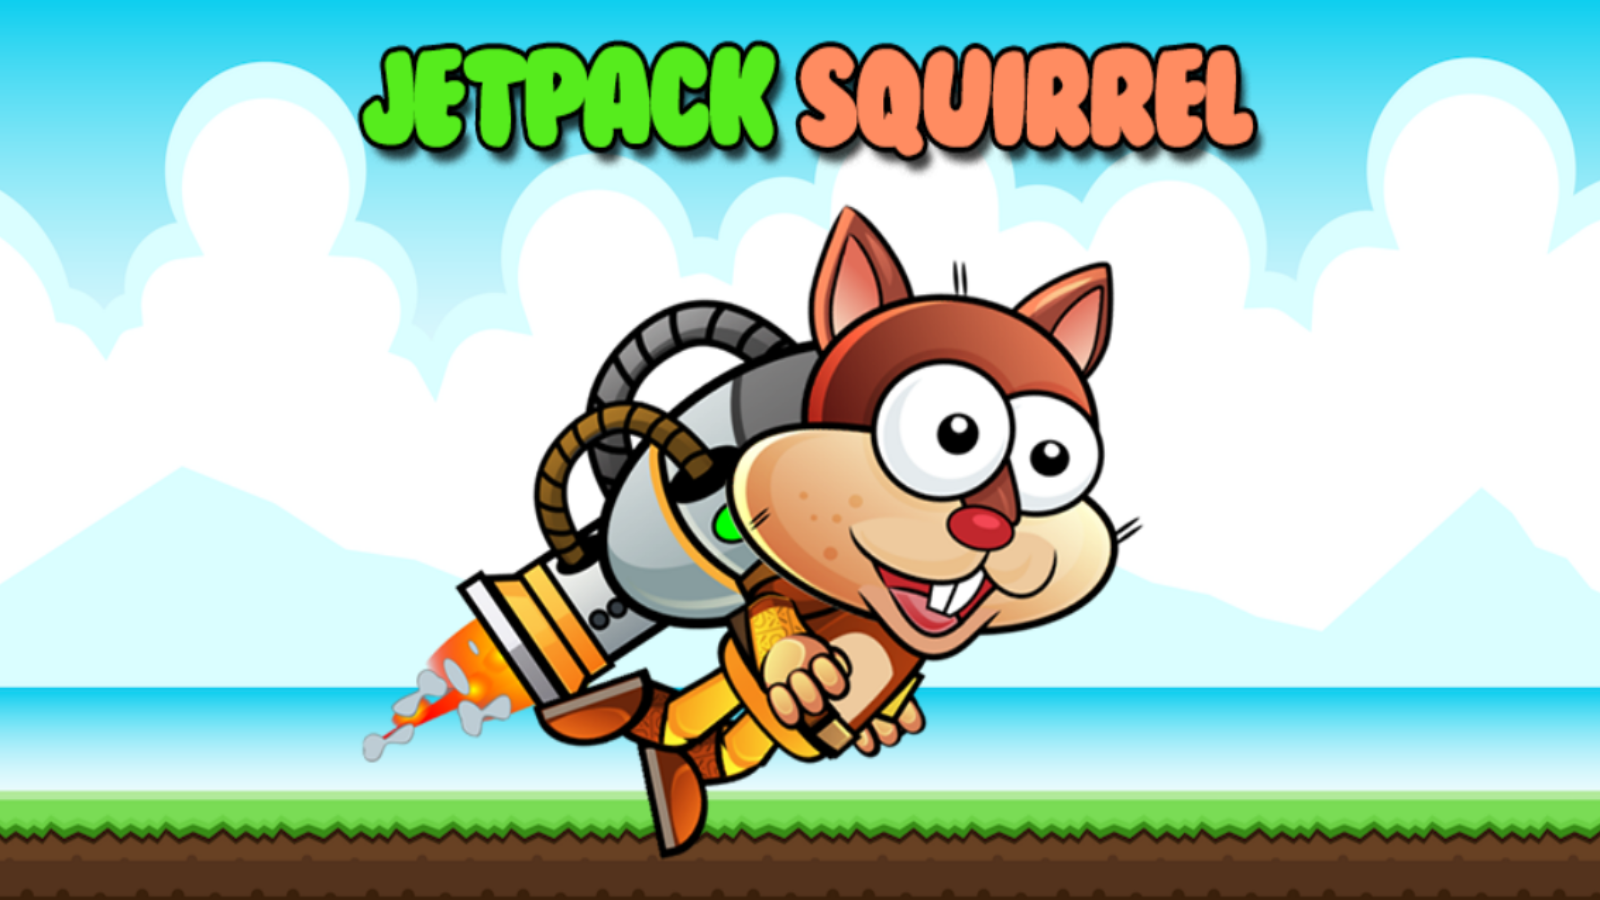 (Jetpack Squirrel)ͼ